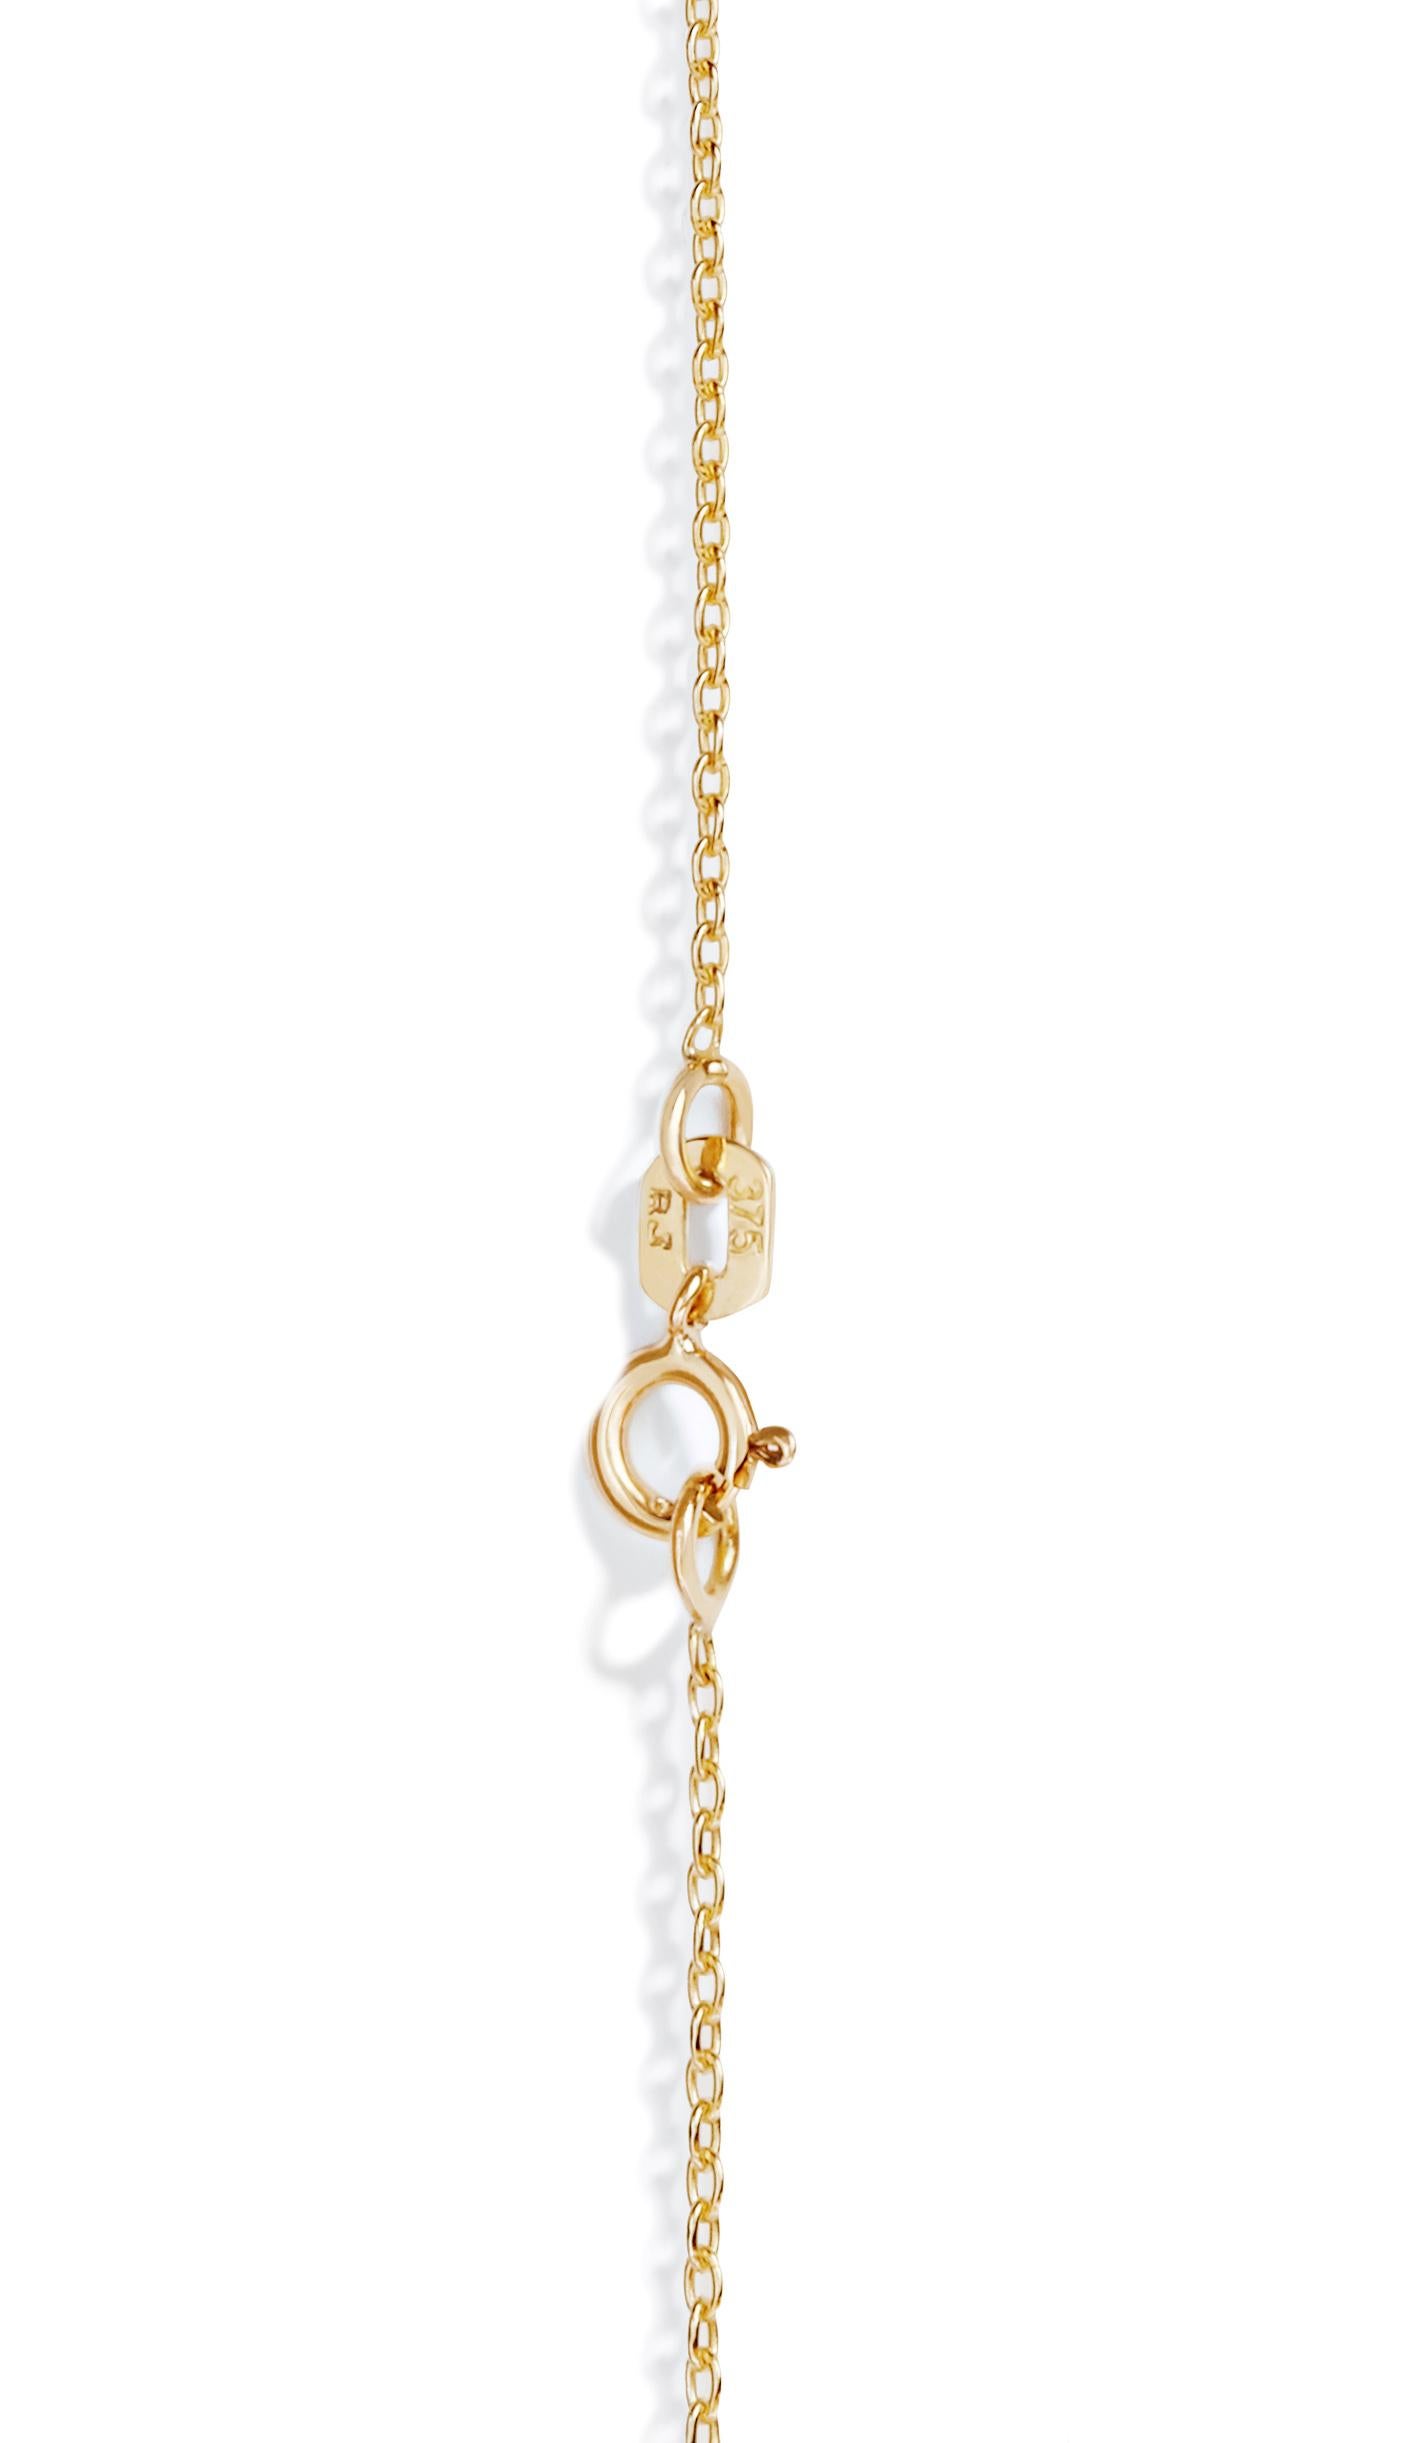 Diese klassische Halskette mit Scheibenanhänger aus massivem 9-karätigem Gold zeichnet sich durch ihre charakteristische Papierstruktur aus.  Der Anhänger hat einen Durchmesser von 1 1/4 Zoll und wird an einer 20-Zoll langen Kette aus massivem